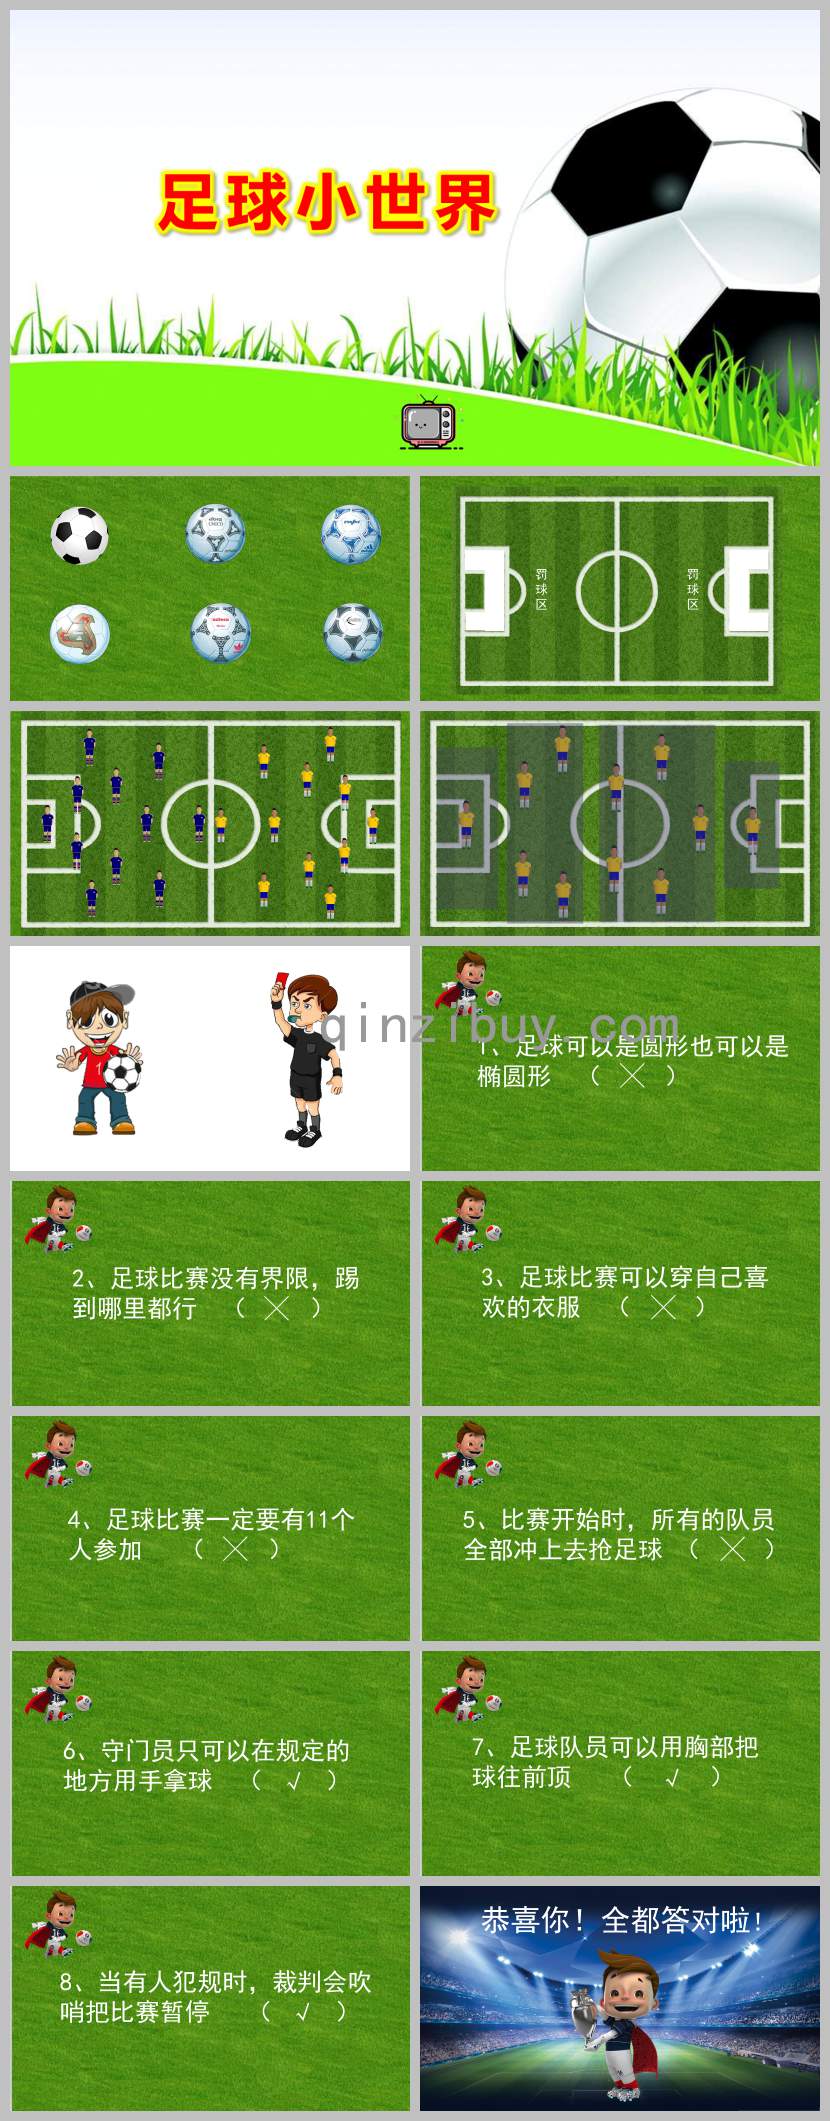 幼儿园足球小世界PPT课件教案图片